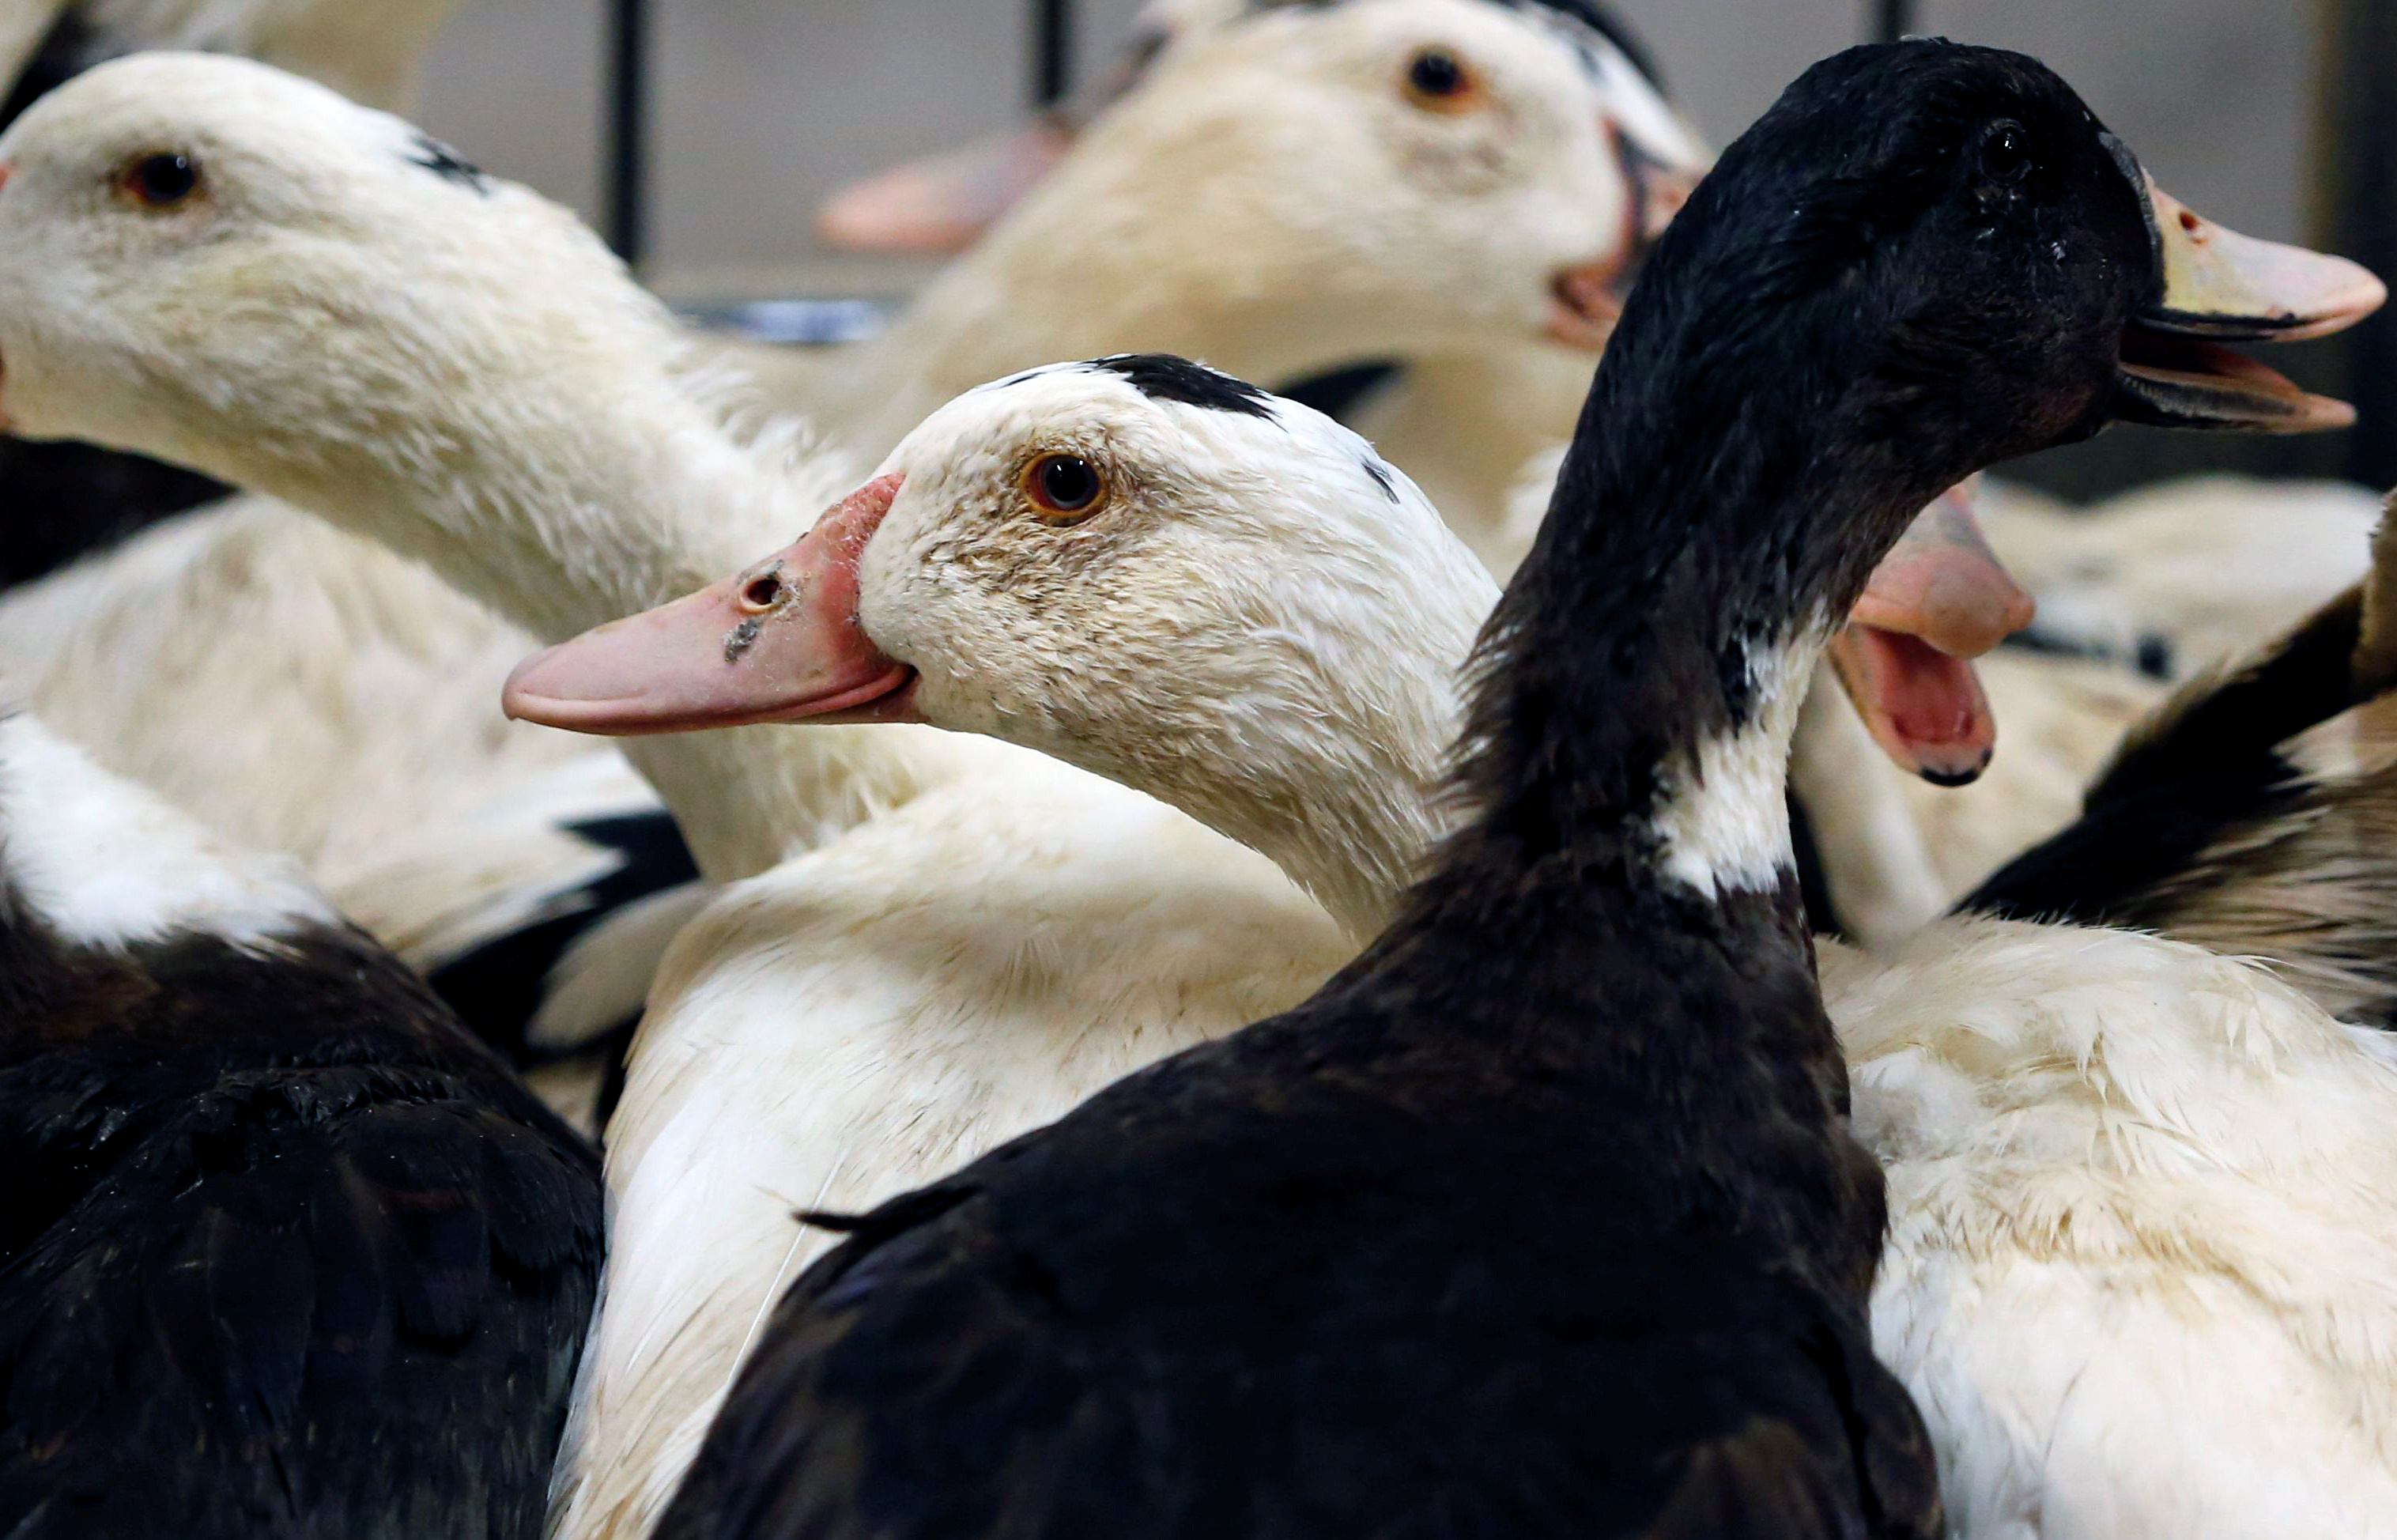 Grippe aviaire: le niveau de risque a été relevé à « modéré », un foyer identifié dans le Morbihan